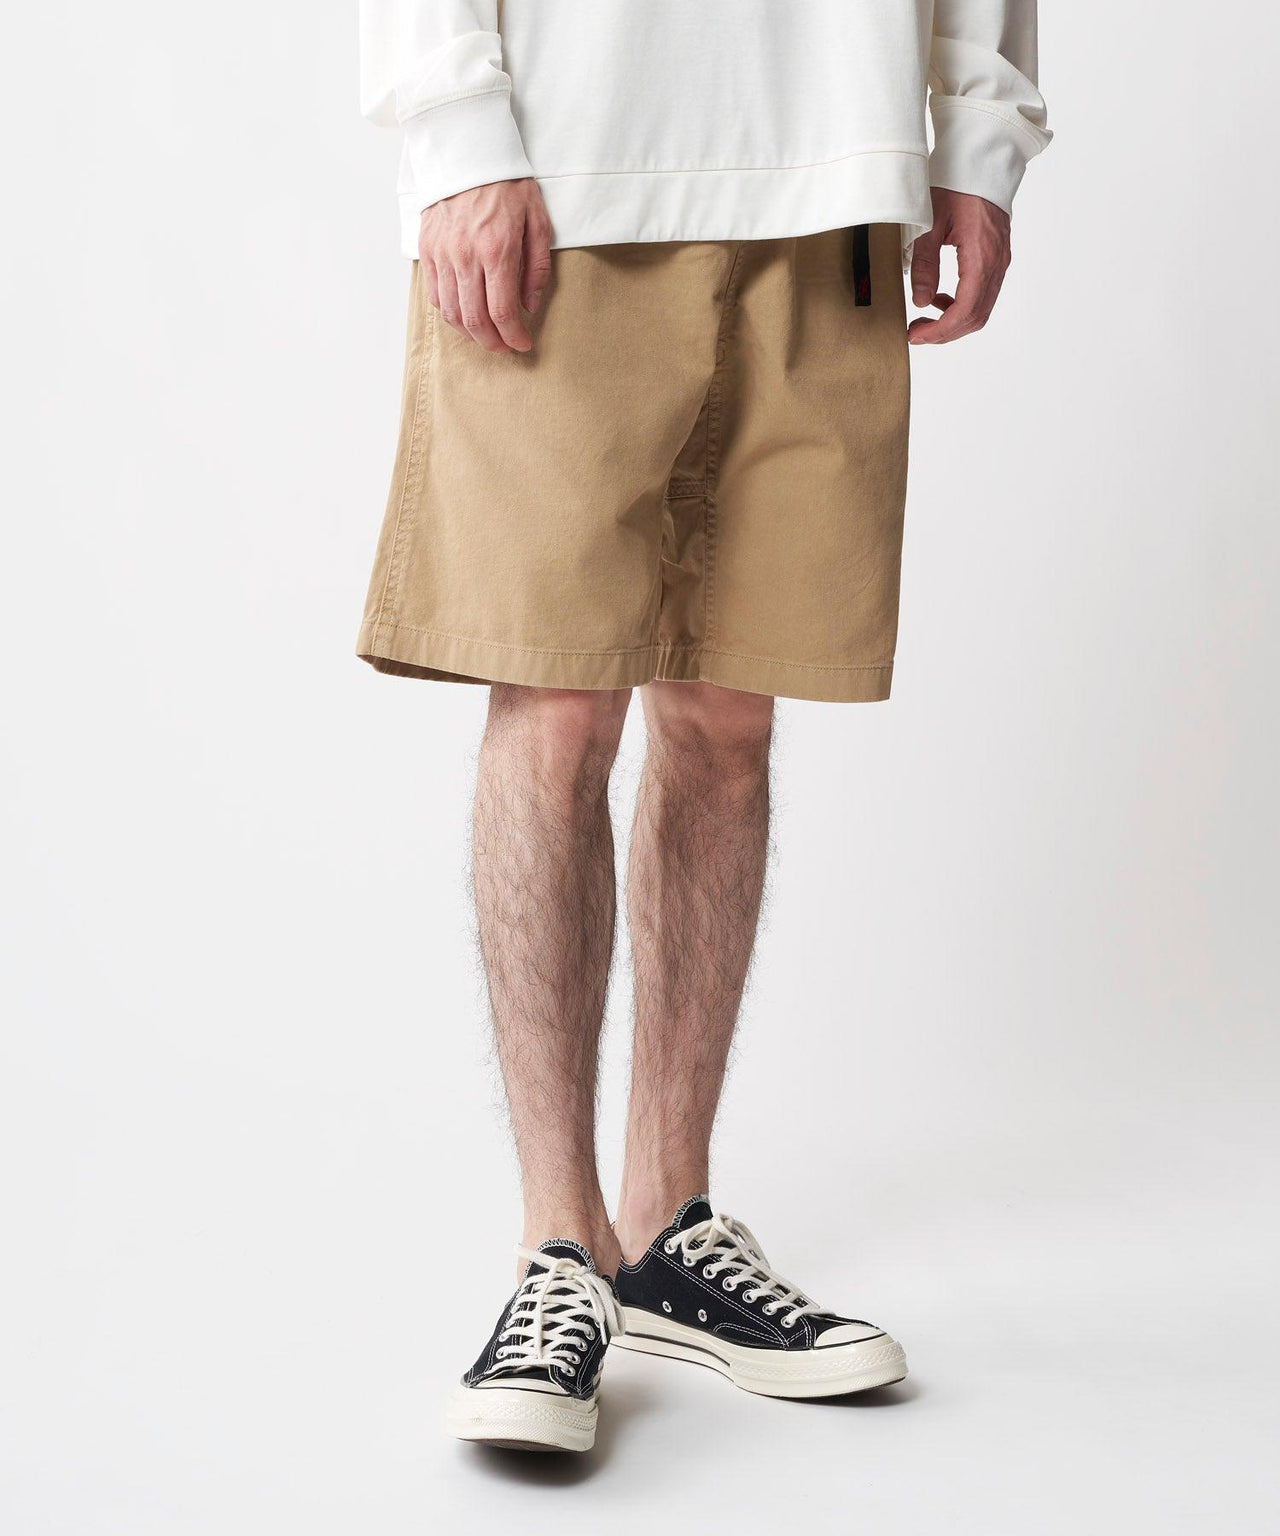 G-Shorts - Locals Streetwear NZ